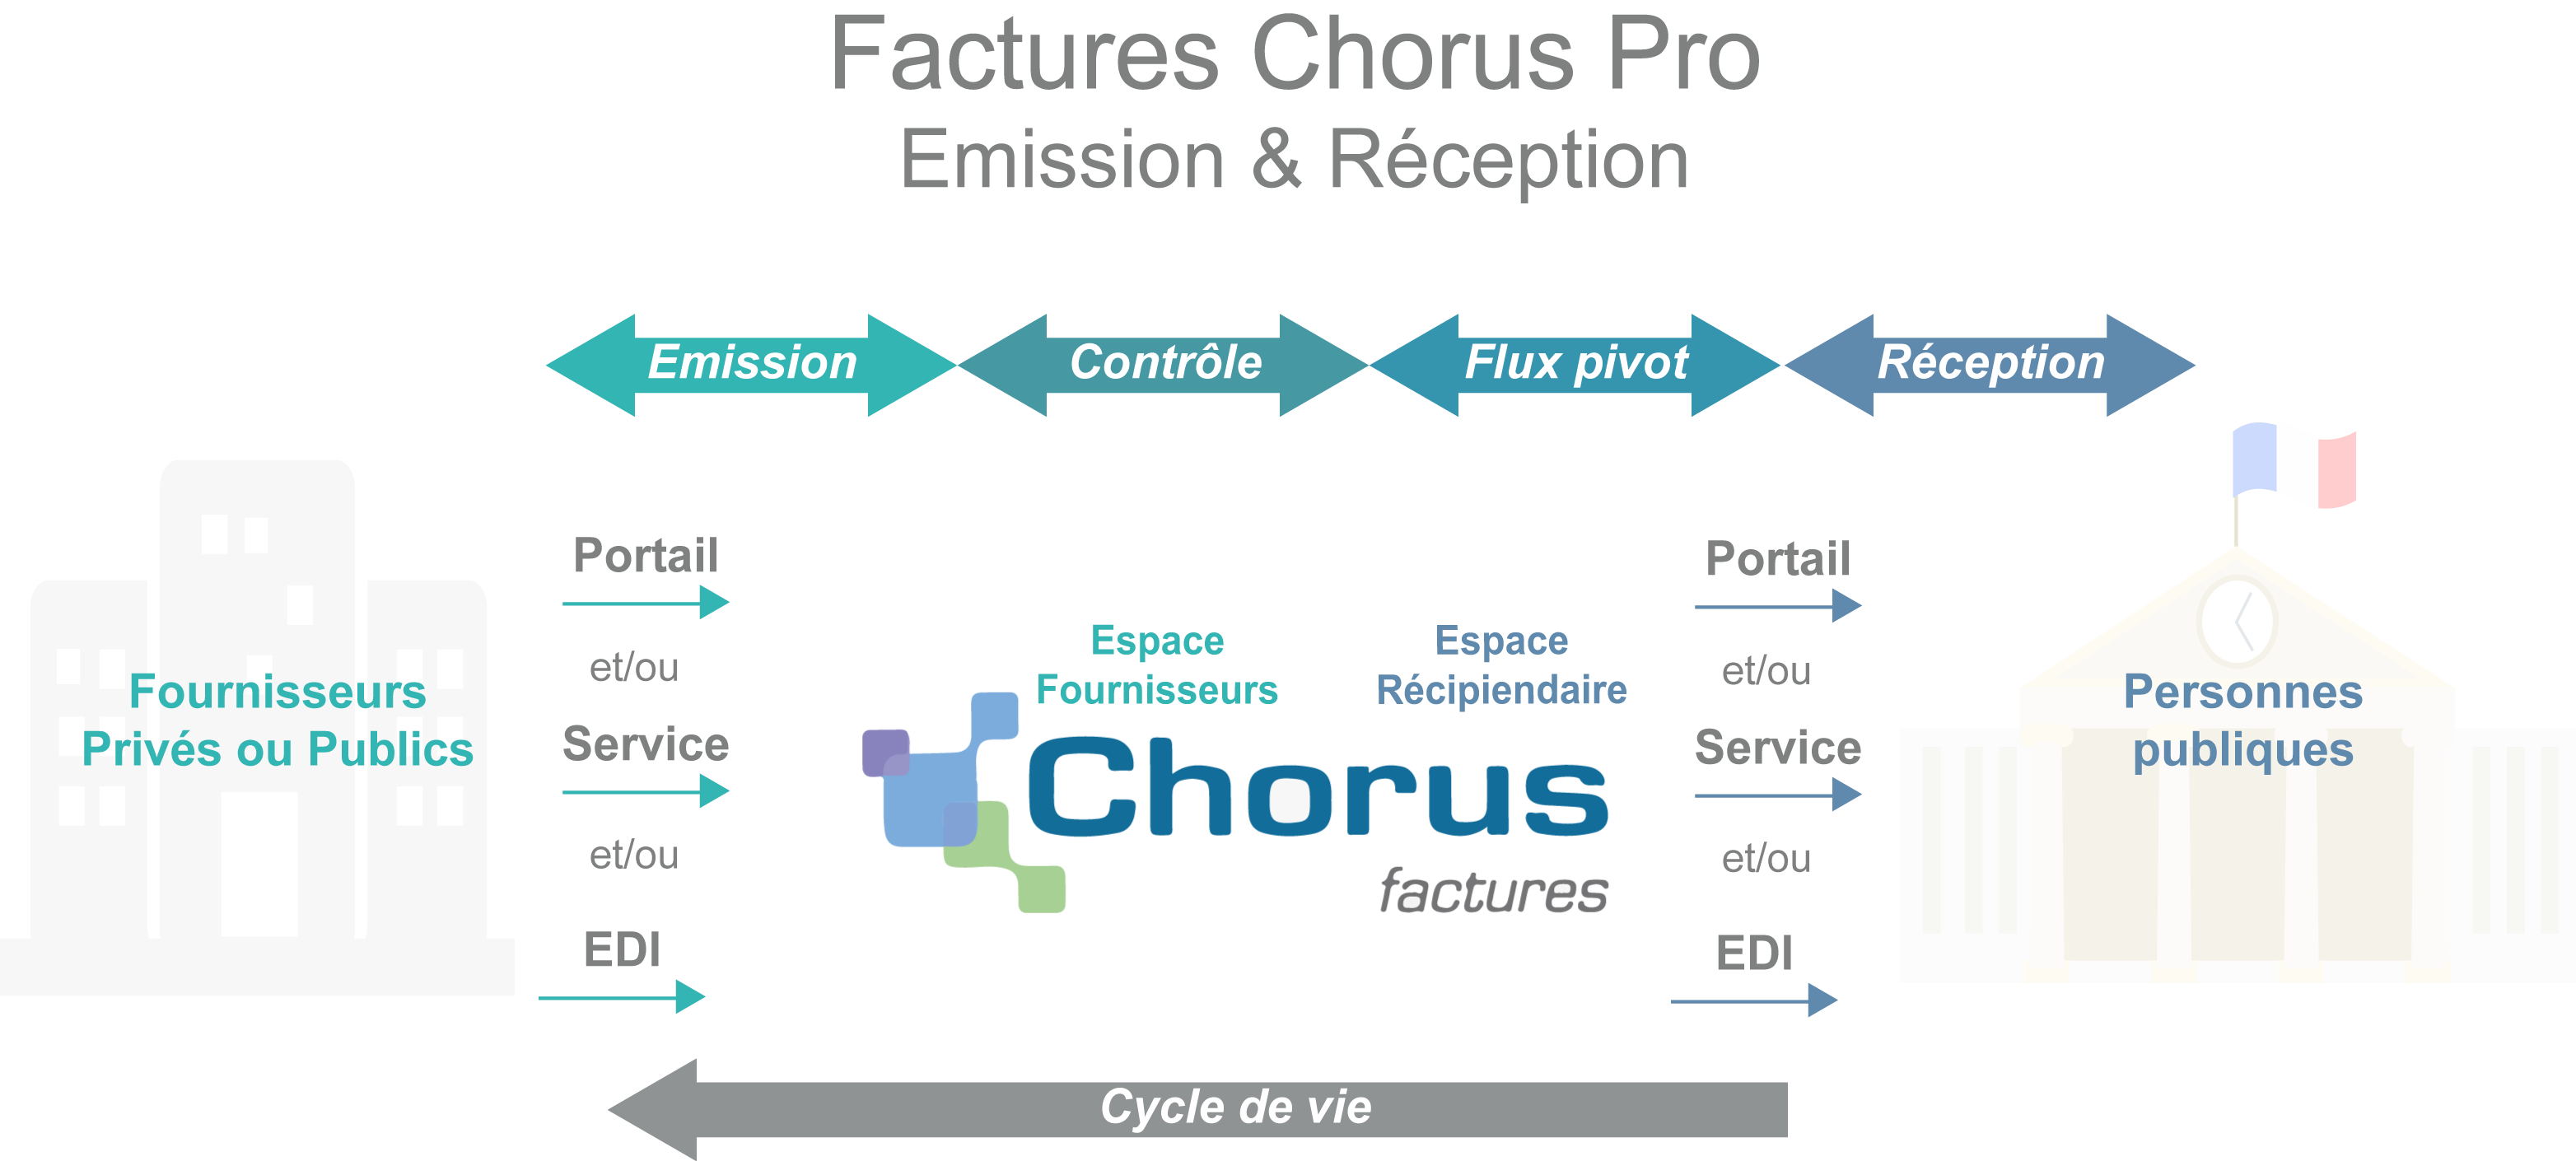 Plateforme de factures électroniques Chorus Pro